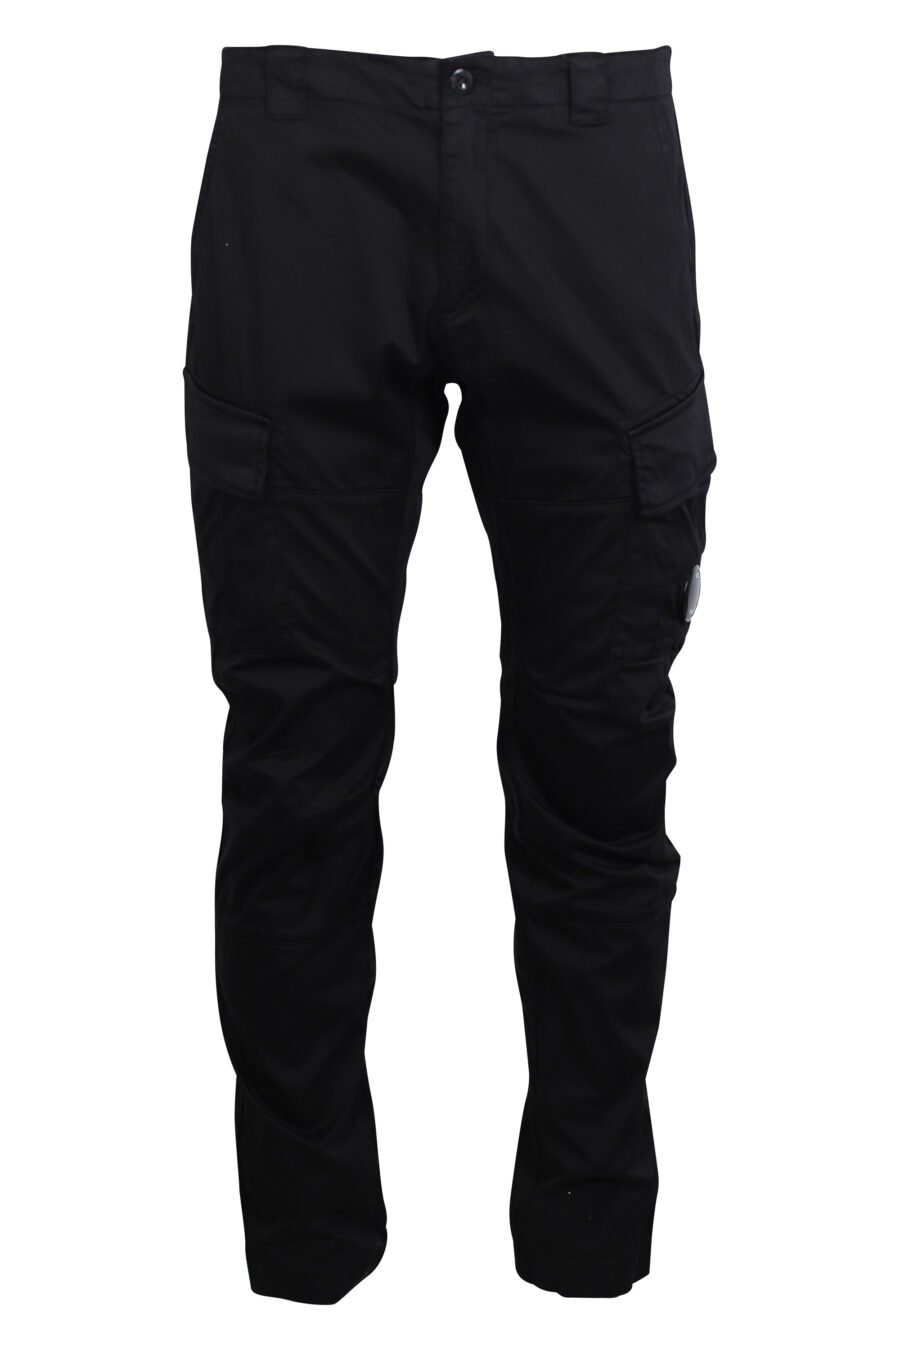 Black cargo trousers with circular mini-logo - IMG 2464